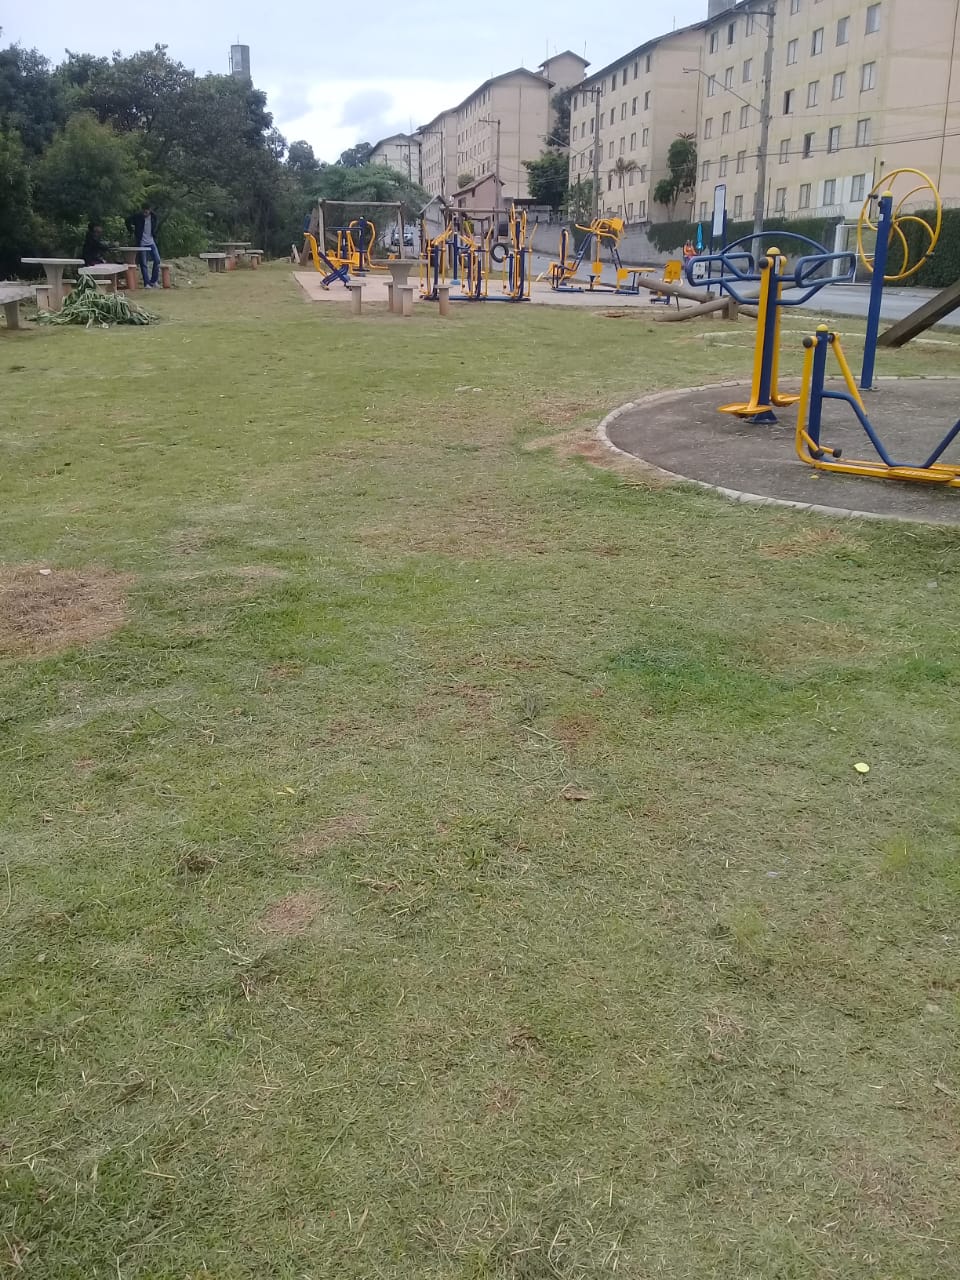 O gramado está limpo e aparado, na rua Emílio Retrosi, no Jardim Marilu. O acesso ao playground, onde a criançada brinca, está seguro, com a grama aparada. No fundo da foto, os prédios de apartamentos populares. Local agradável, com árvores ao redor.  